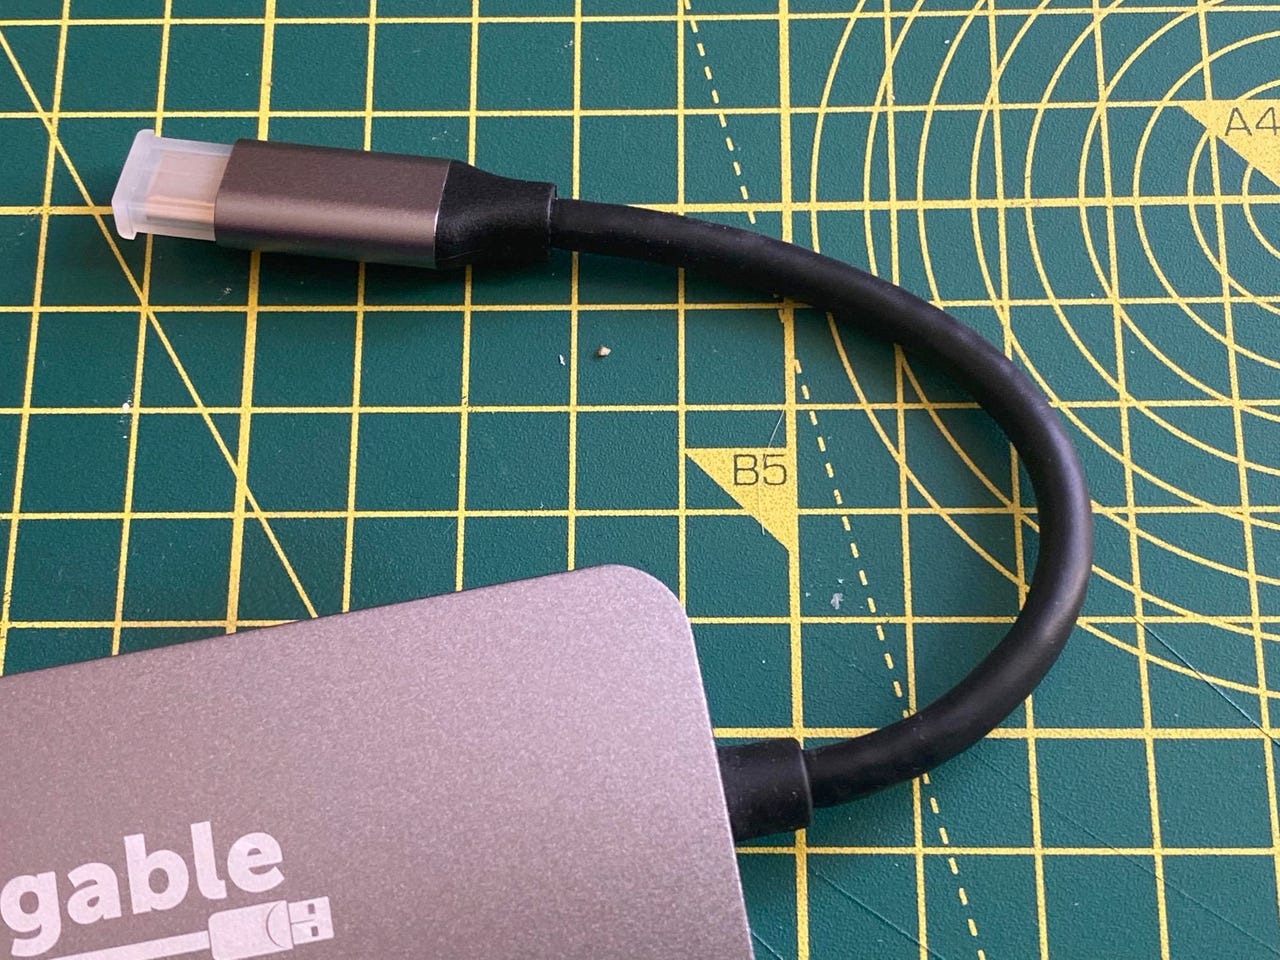 Plugable 7-in-1 USB-C Hub (USBC-7IN1)